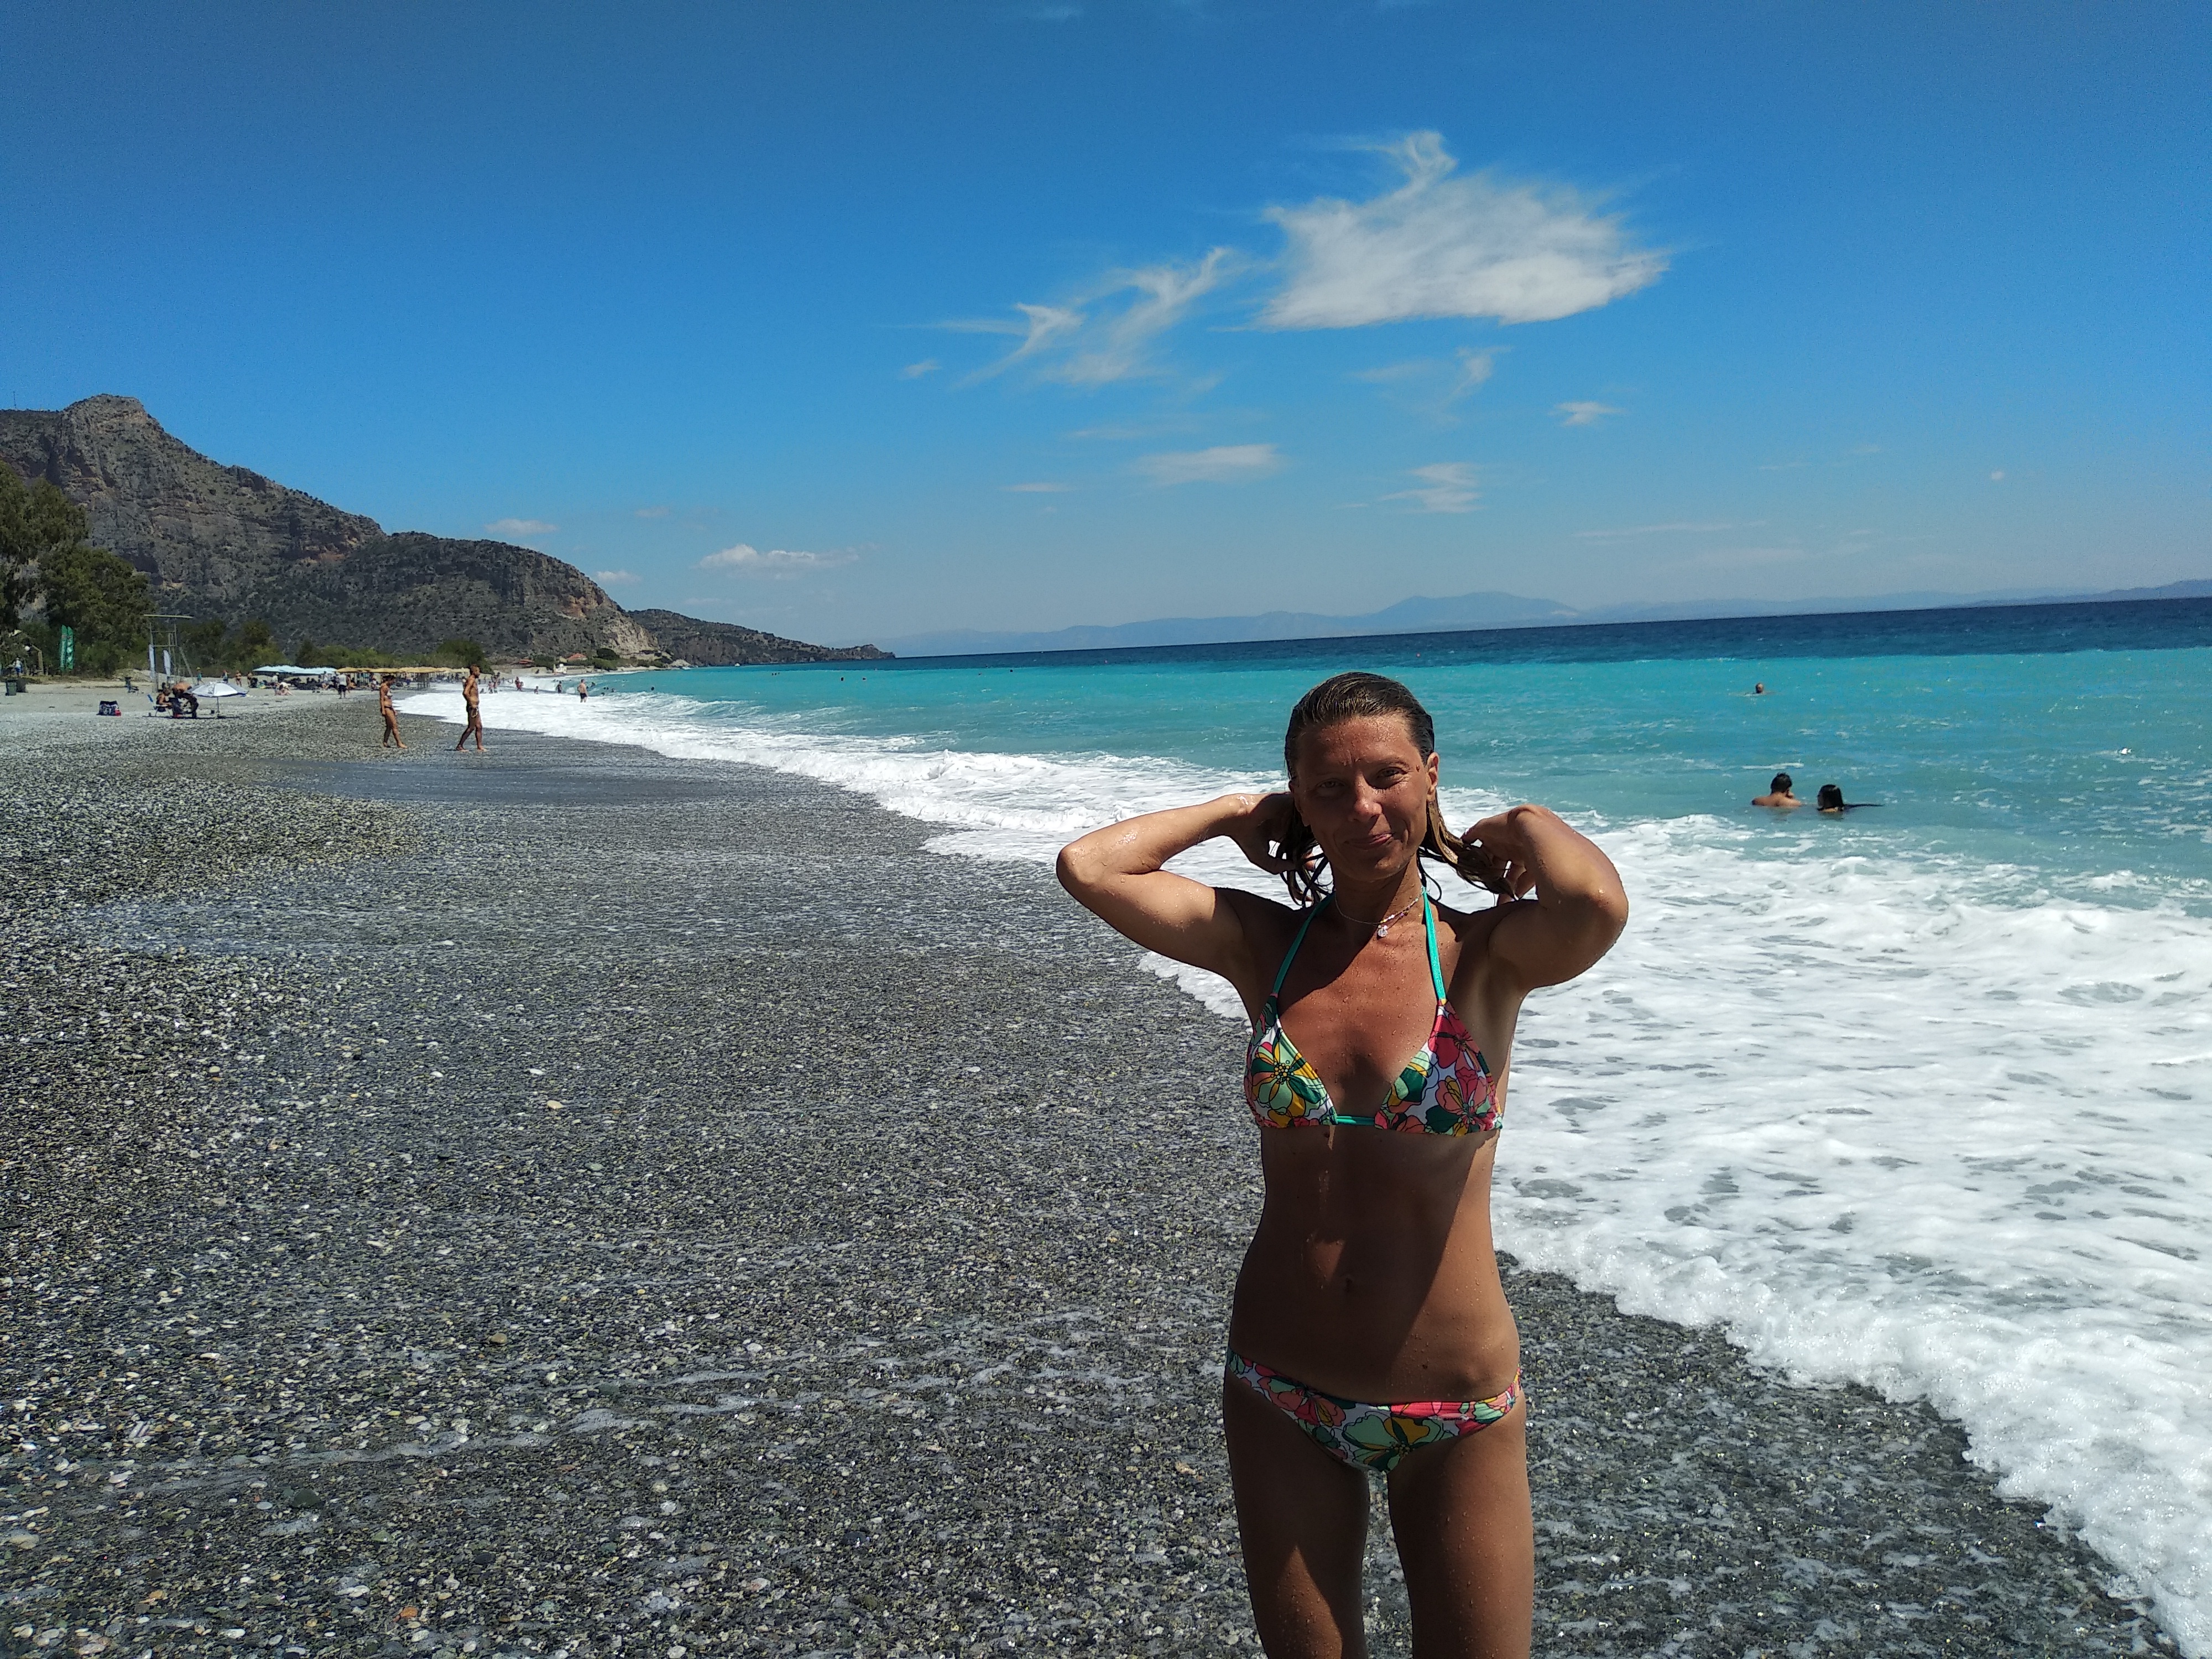 Beach at Leonidio